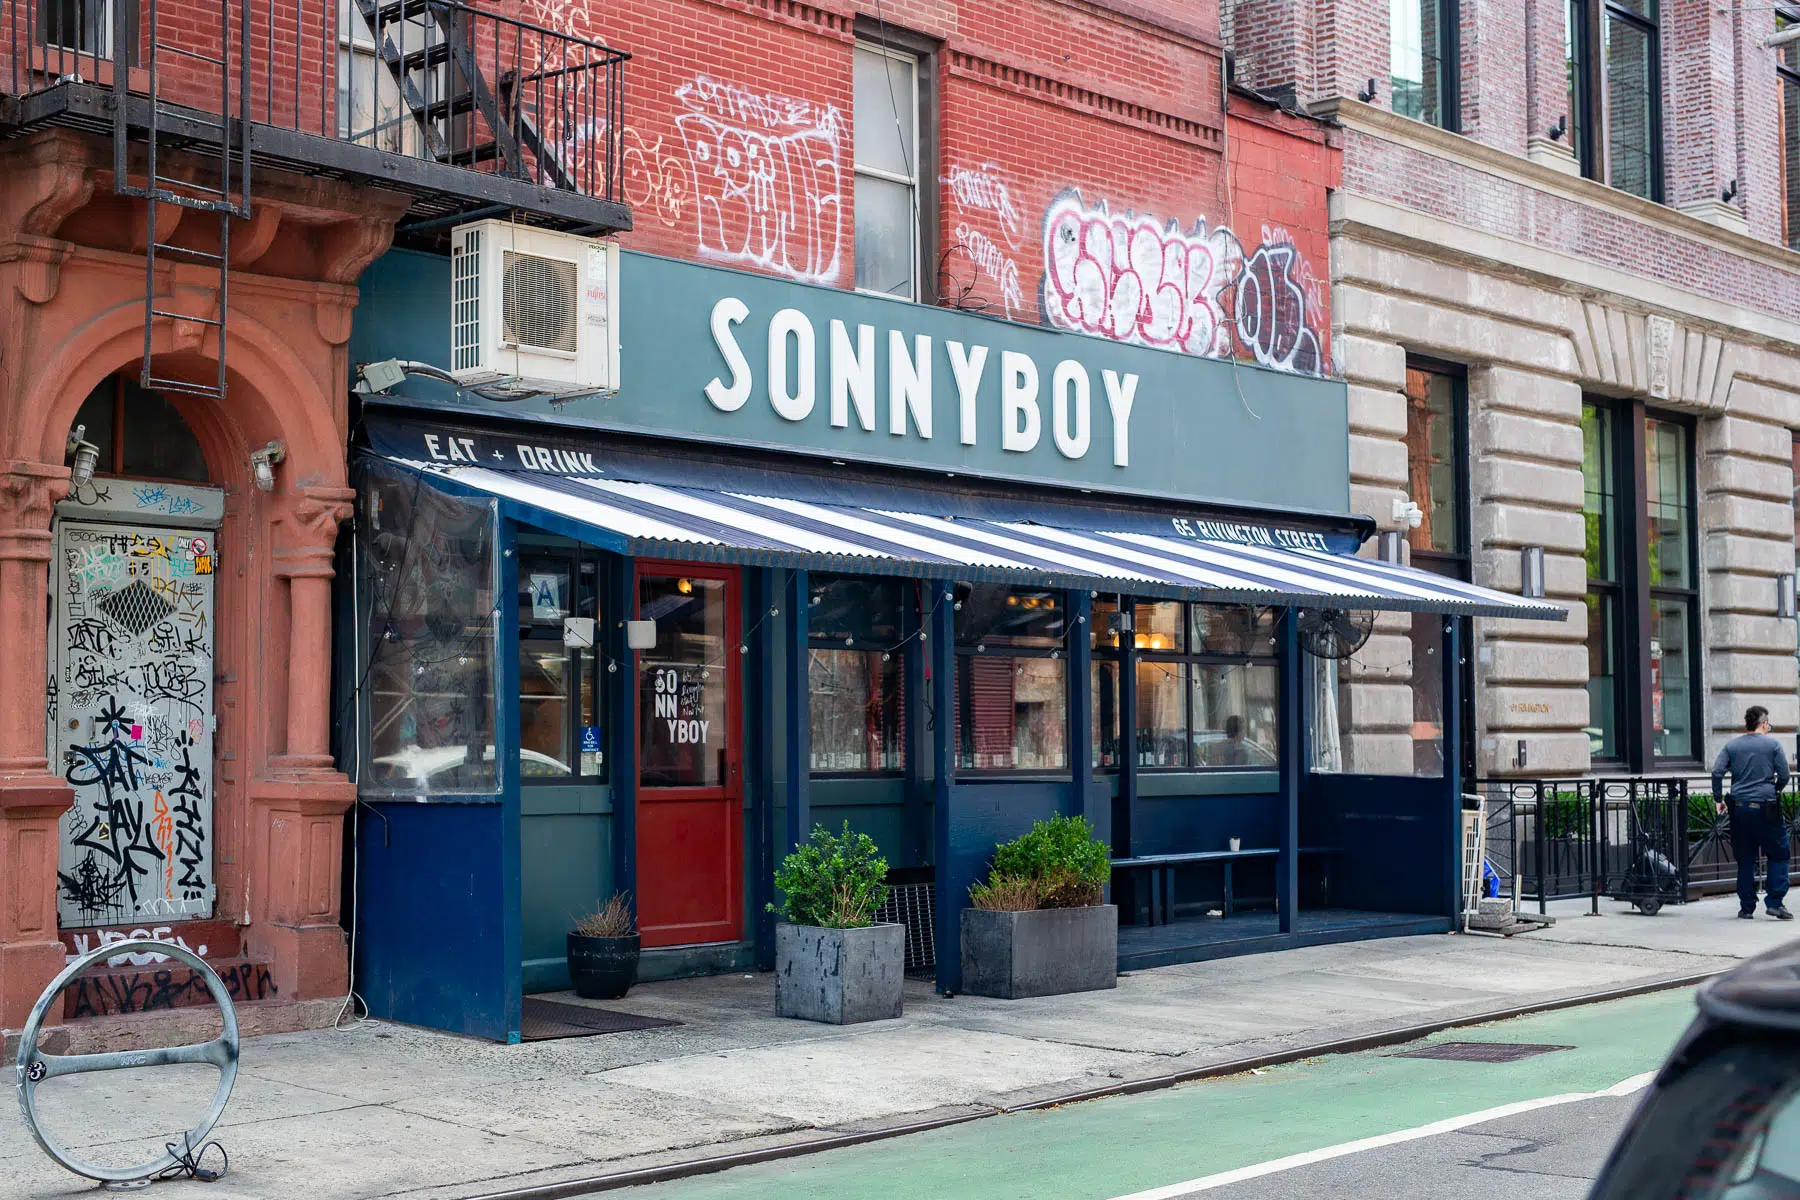 Sonnyboy exterior, best brunch in LES